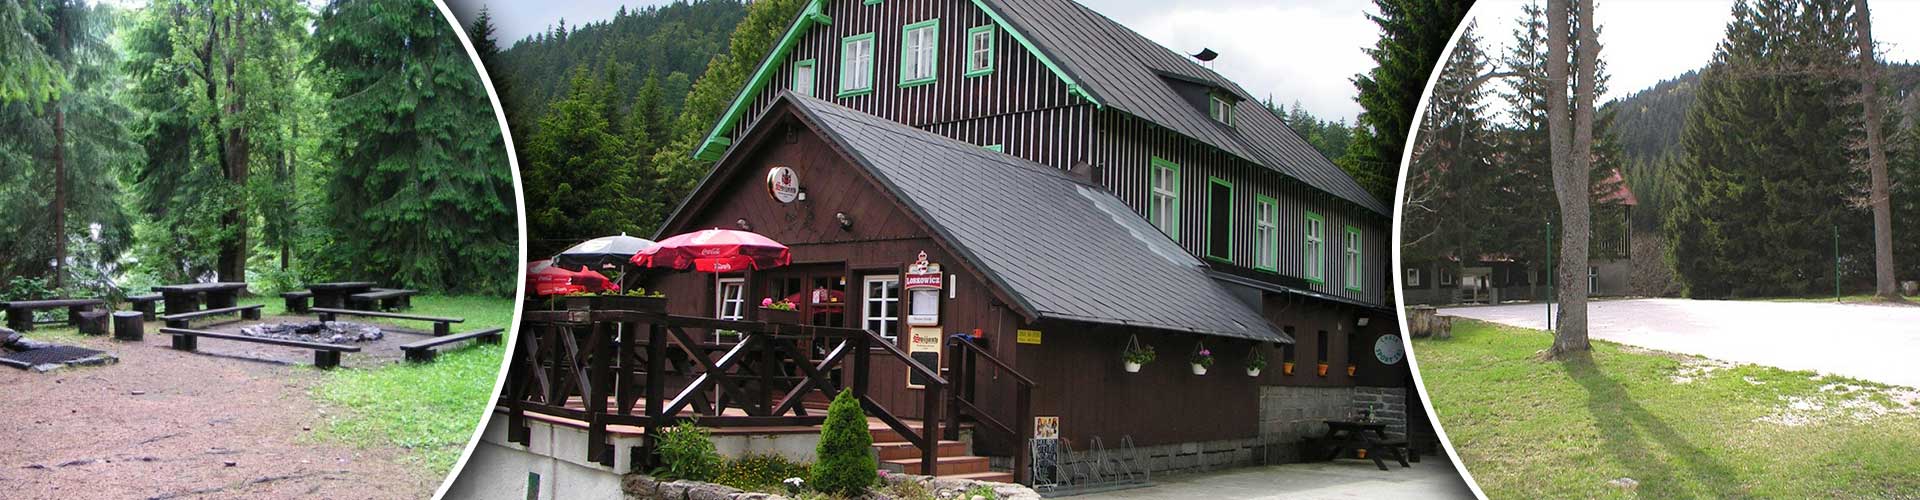 Restaurace Chata Sport Ski